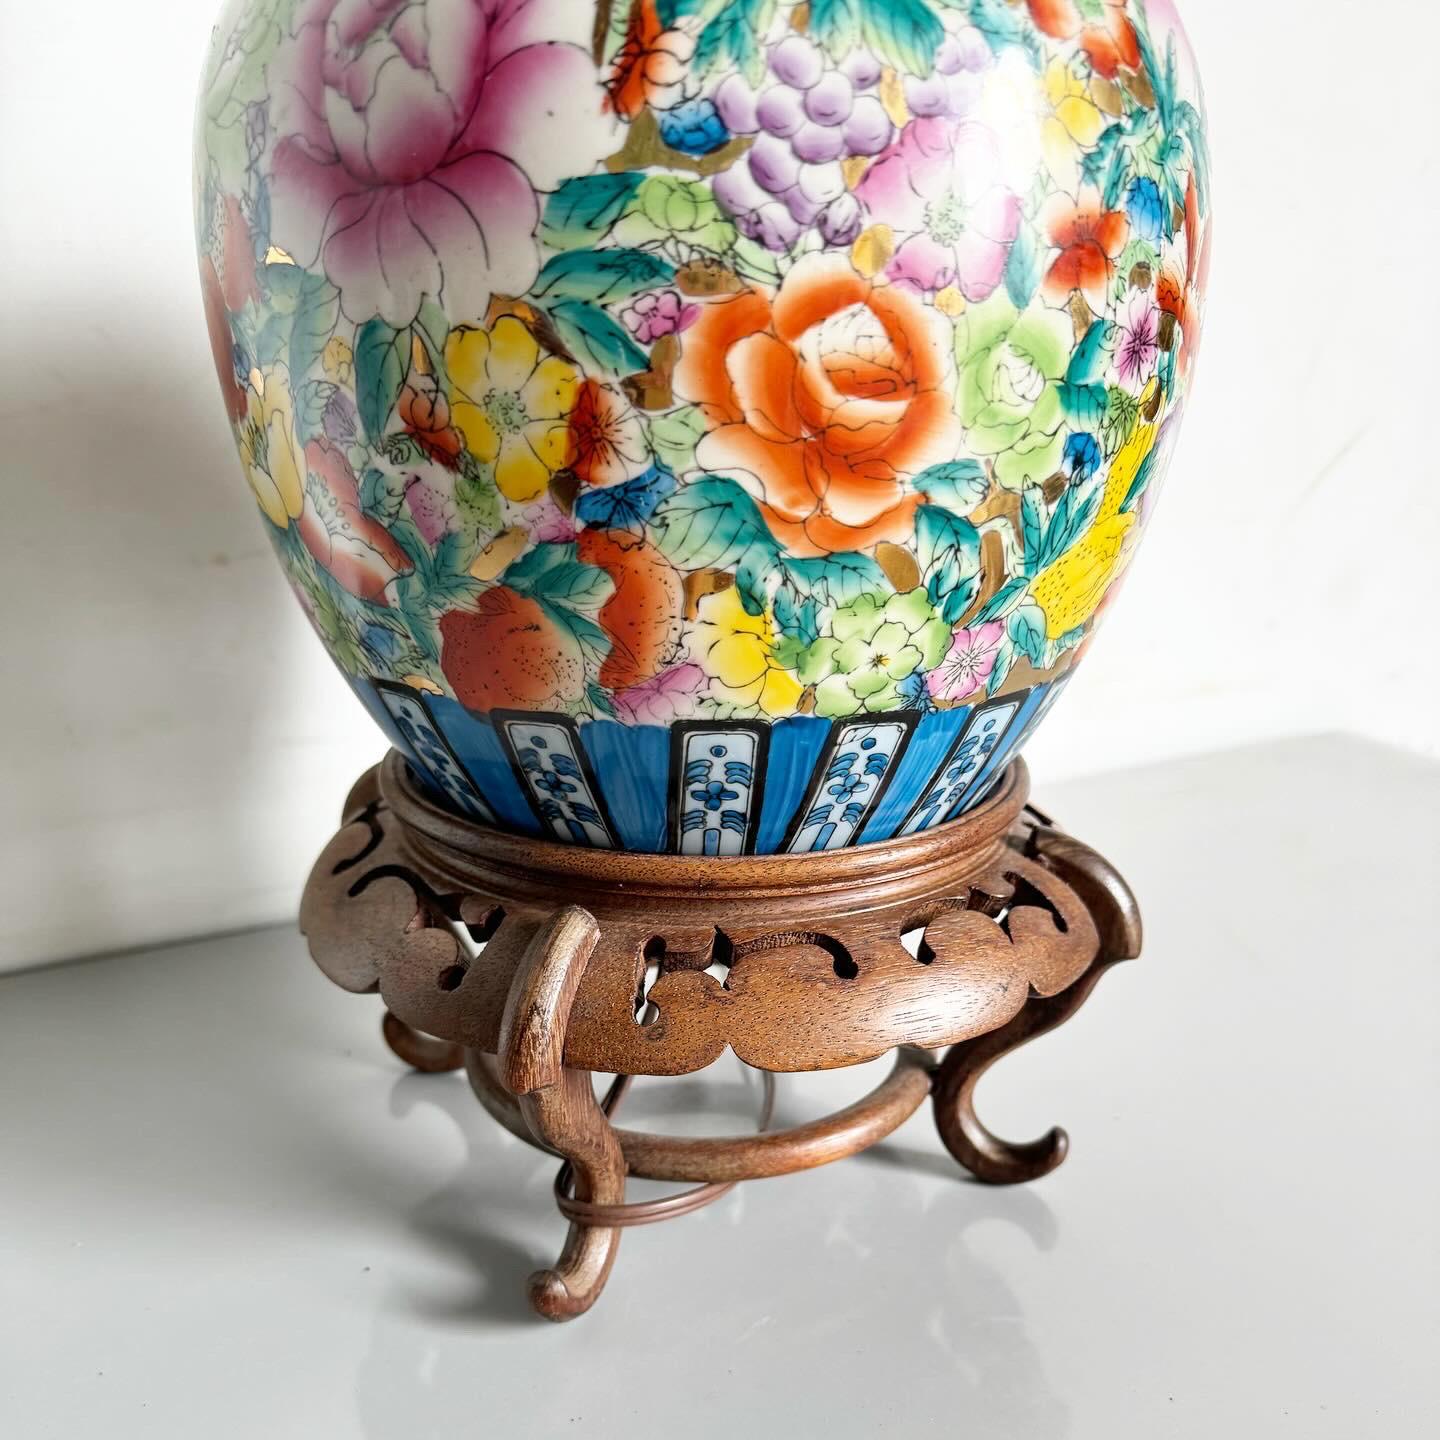 Illuminez votre intérieur avec la beauté culturelle de la lampe de table Pagode chinoise peinte à la main. Cette lampe exquise présente un design de pagode peint à la main, riche en détails et en couleurs vibrantes, sur un socle en bois sculpté à la